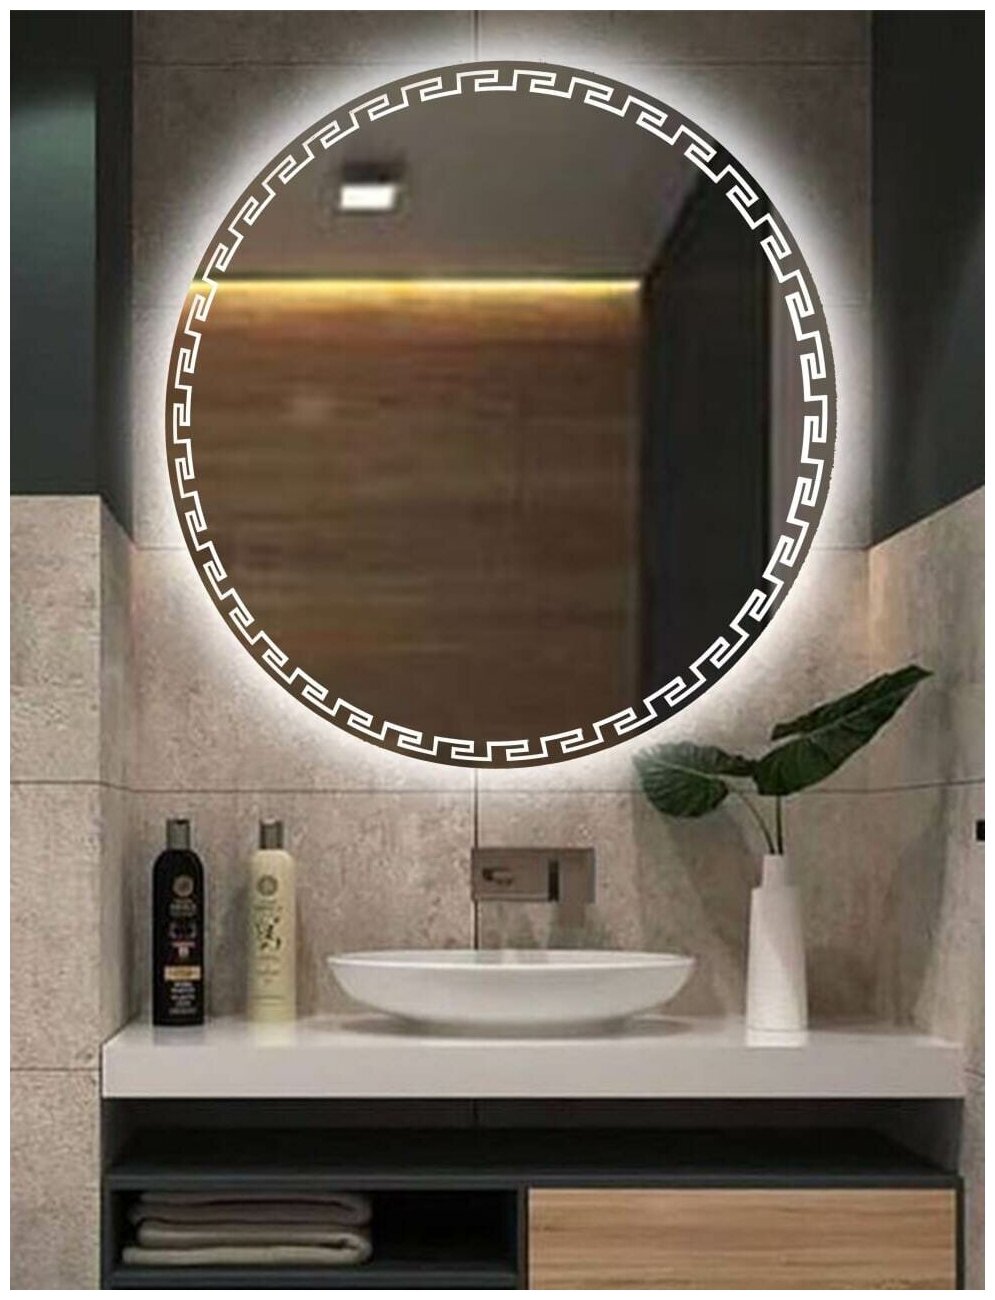 Зеркало настенное с подсветкой парящее круглое 80*80 см "Версаче" для ванной холодный свет 6000 К сенсорное управление